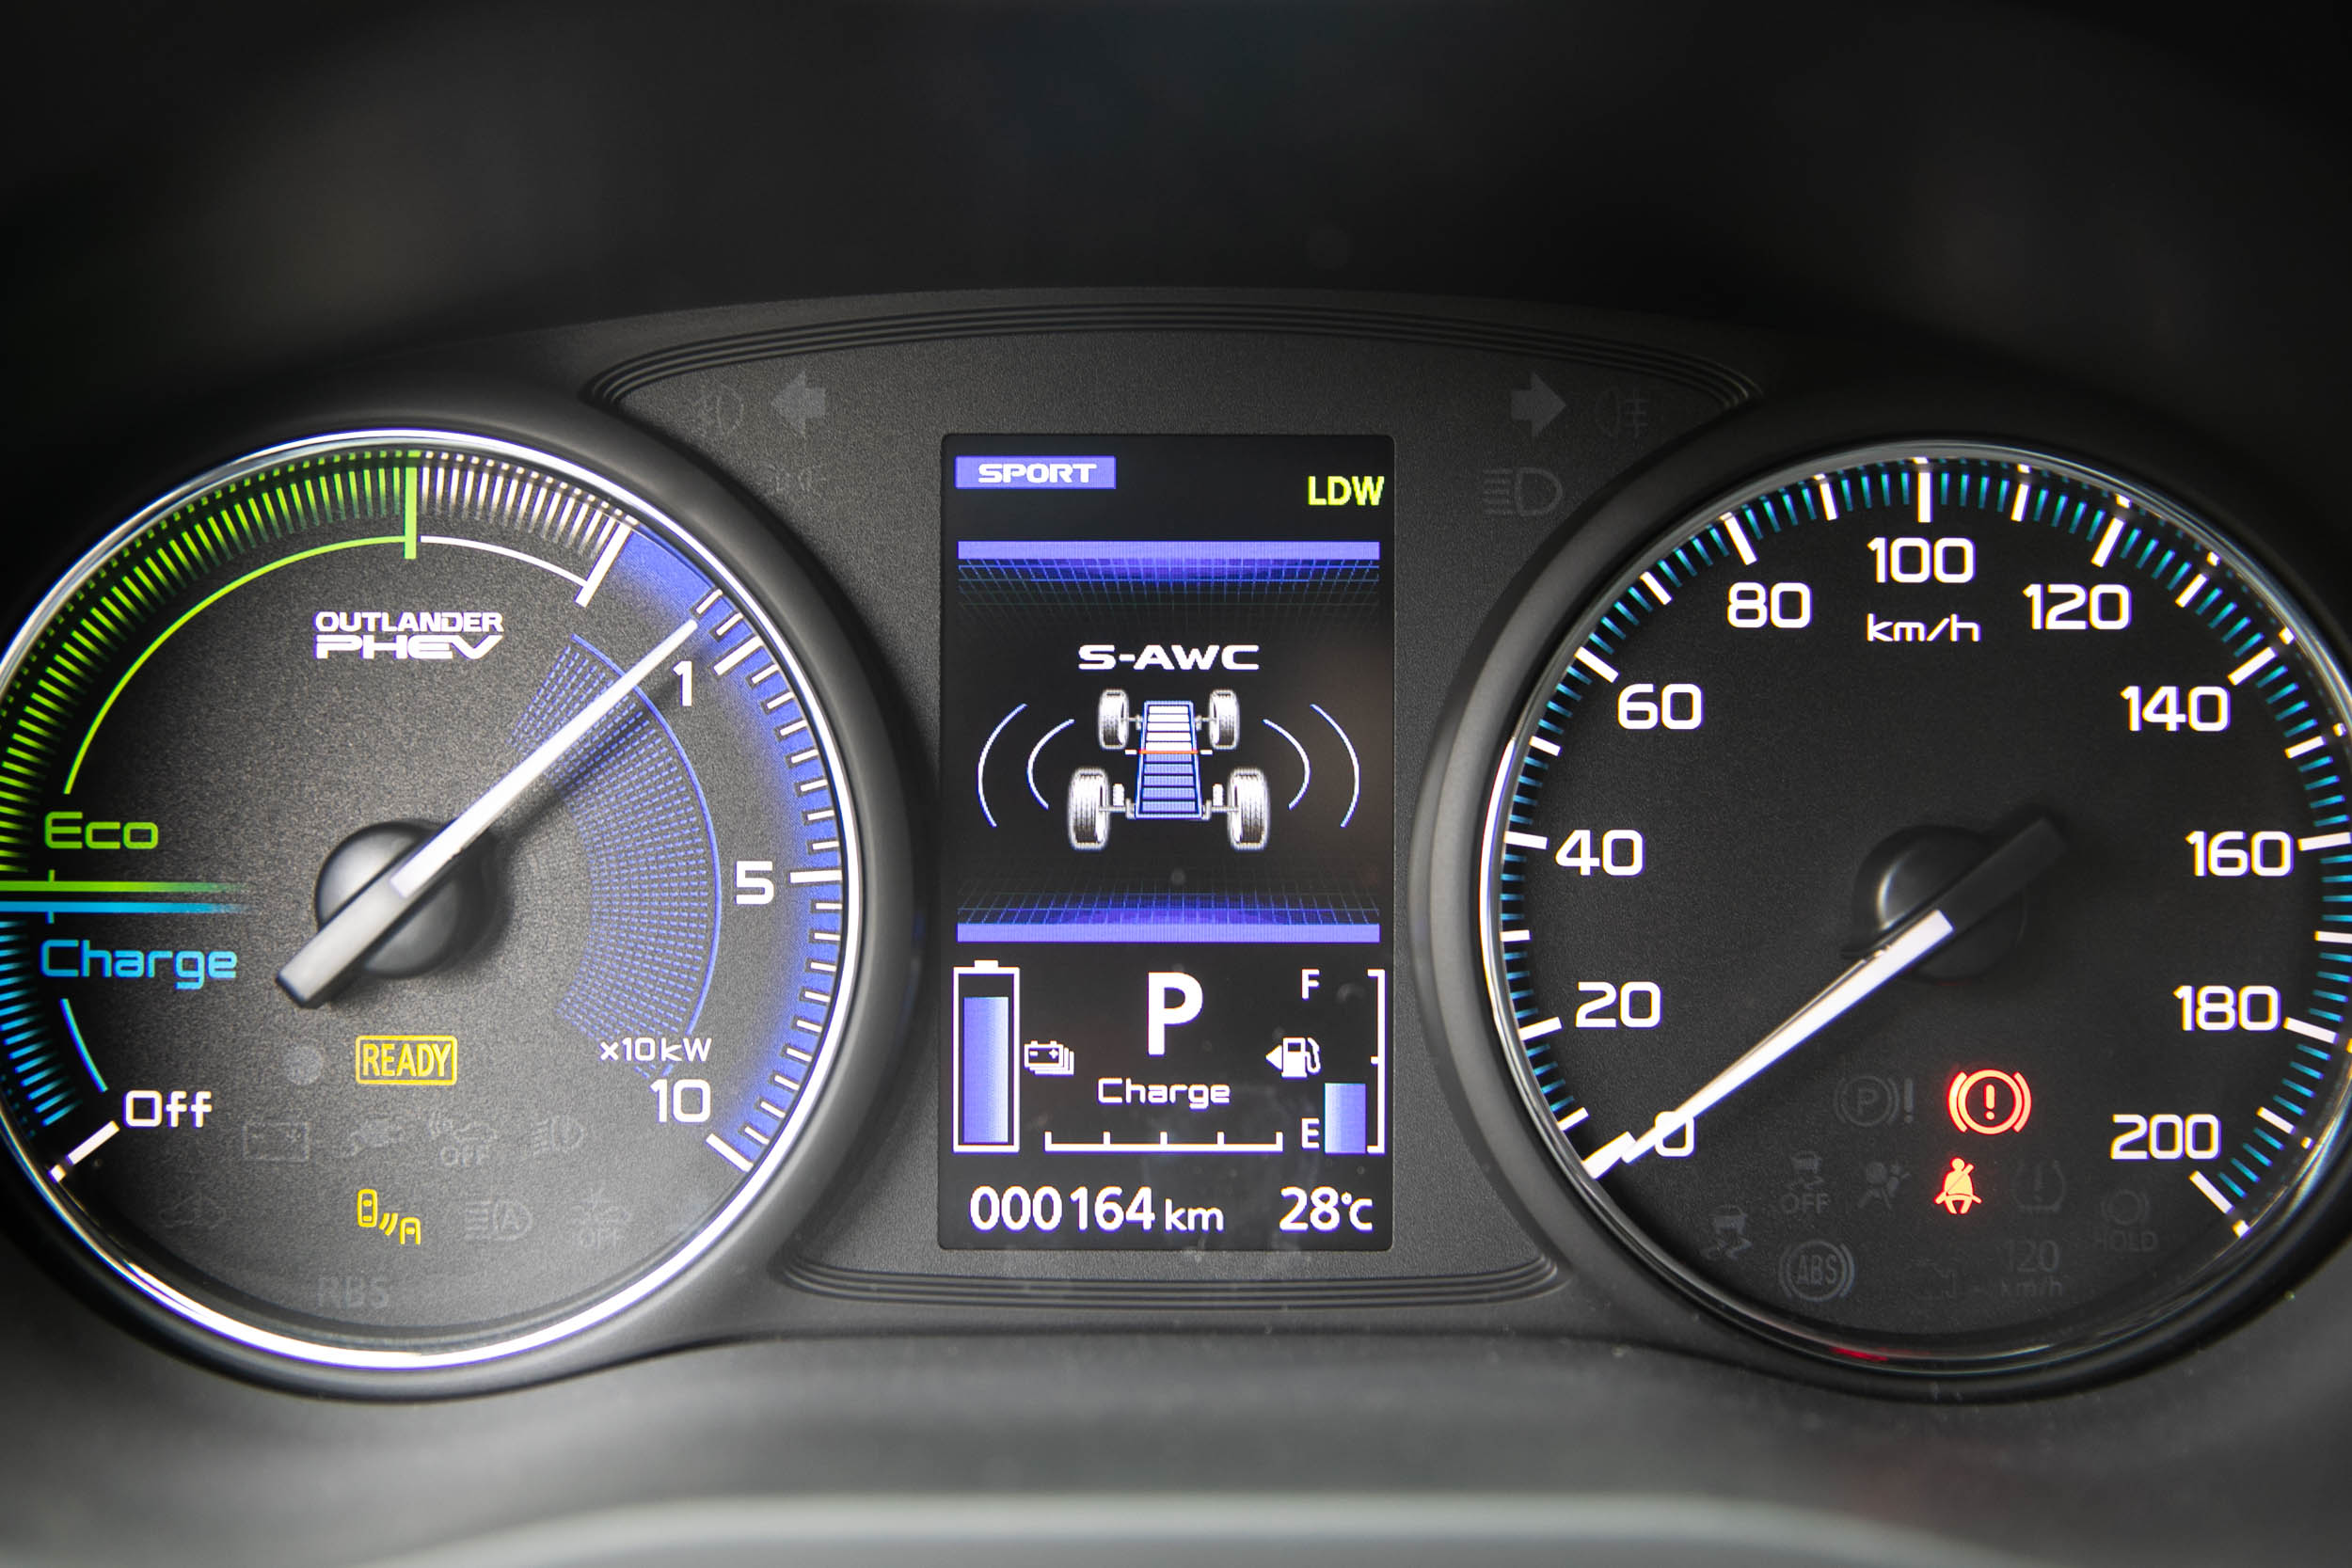 中央顯示幕提供多樣的行車模式與資訊顯示。